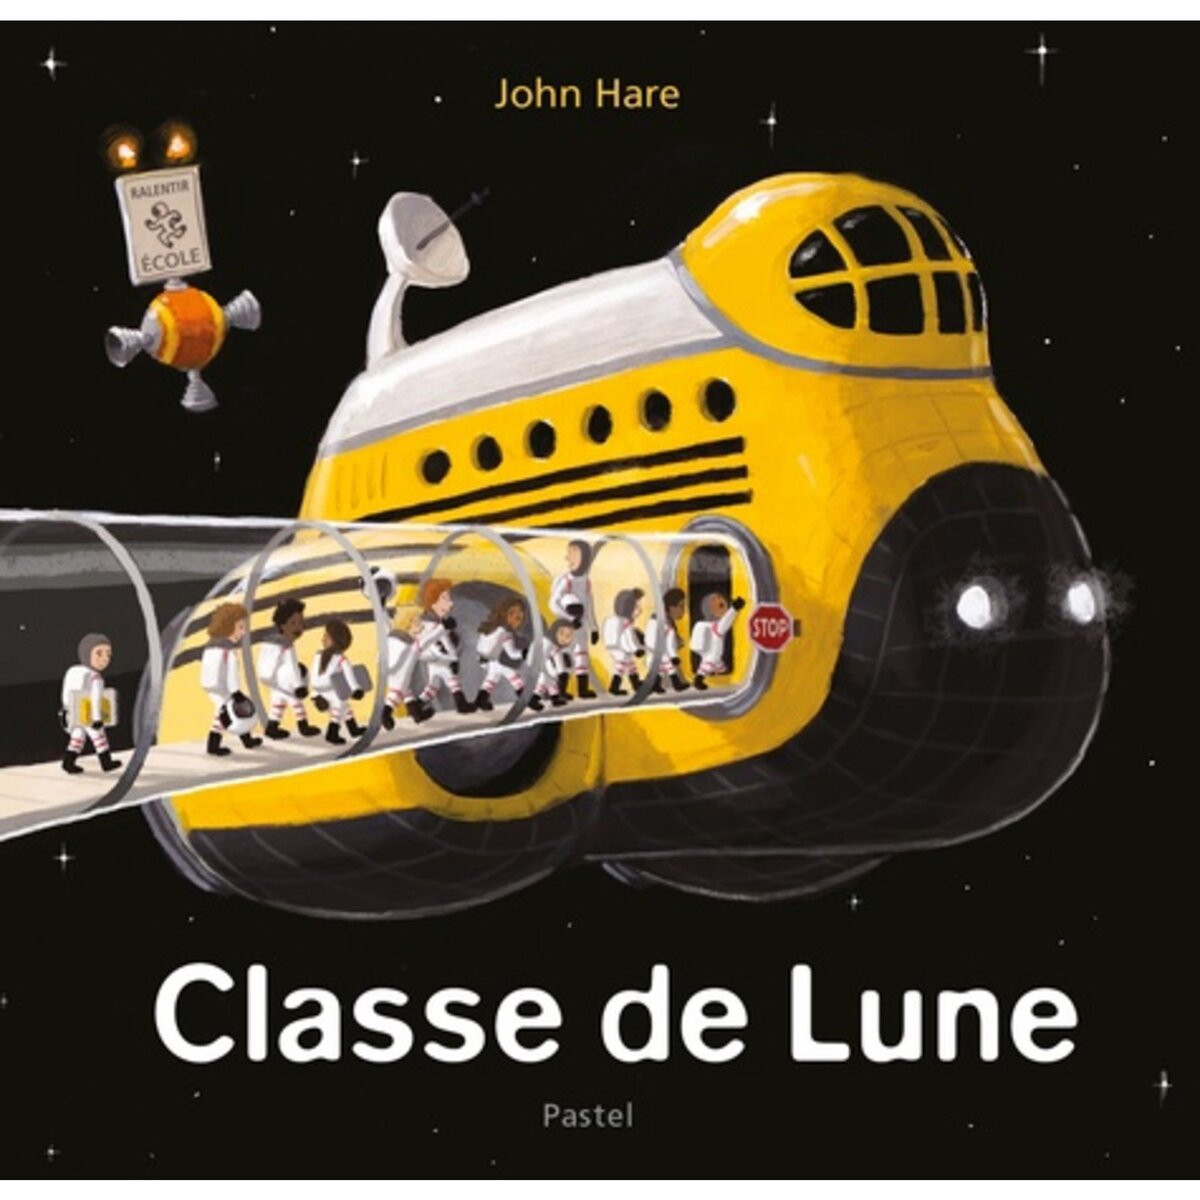  CLASSE DE LUNE, Hare John